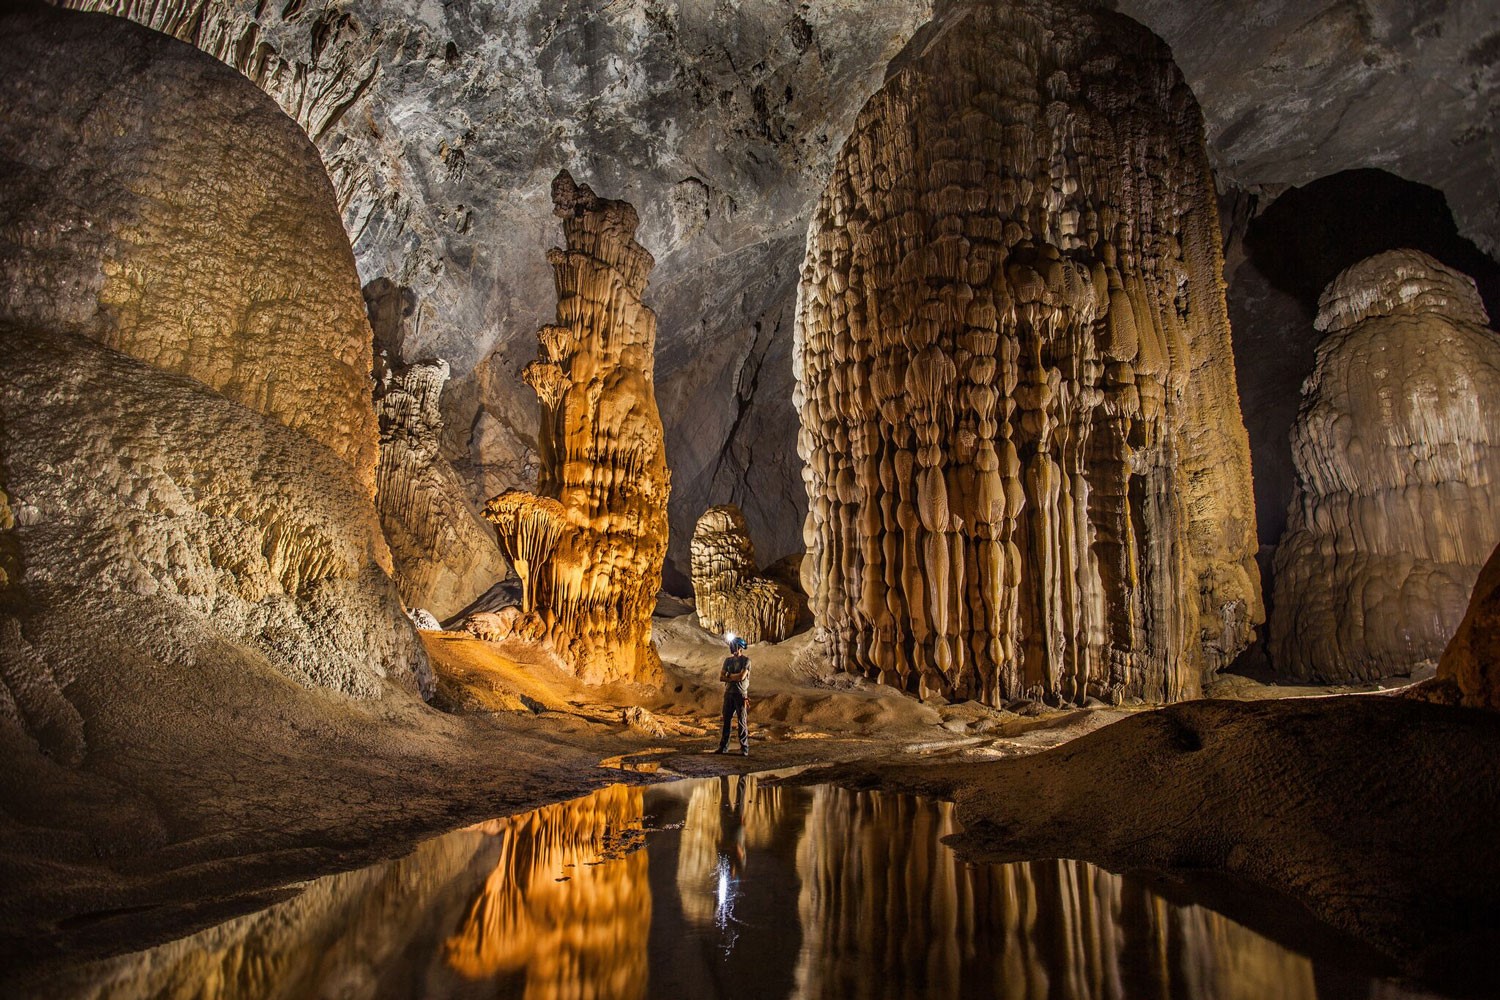 Vietnam natural landscape_Son Doong Cave